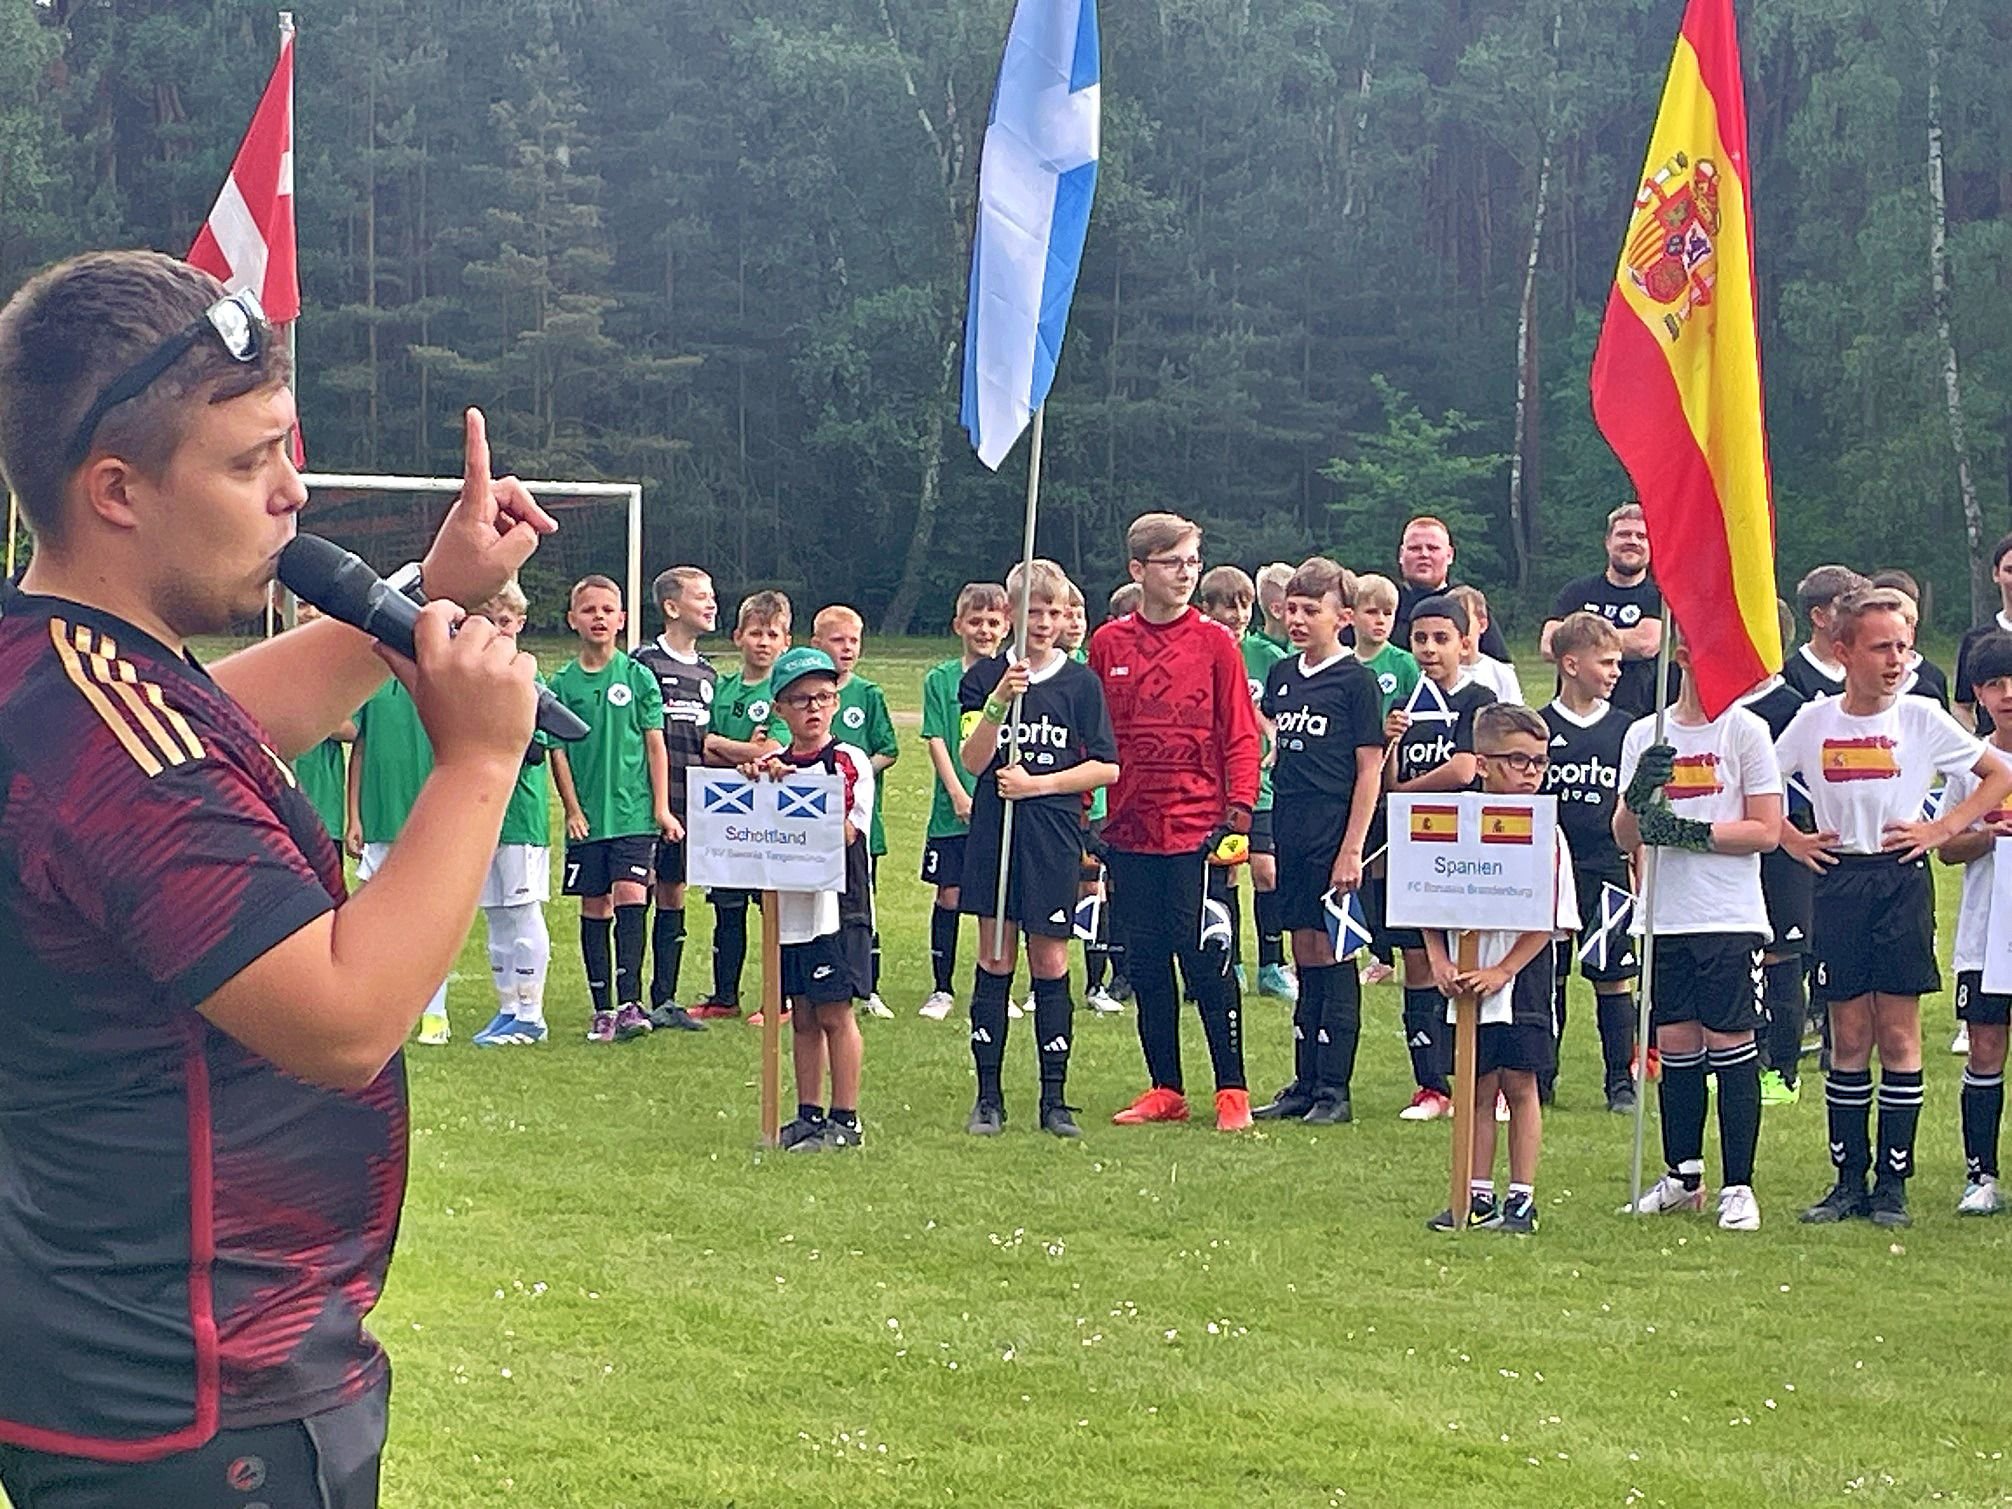 Turnier an Pfingsten: Fußball-Europa zu Gast in Jerichow